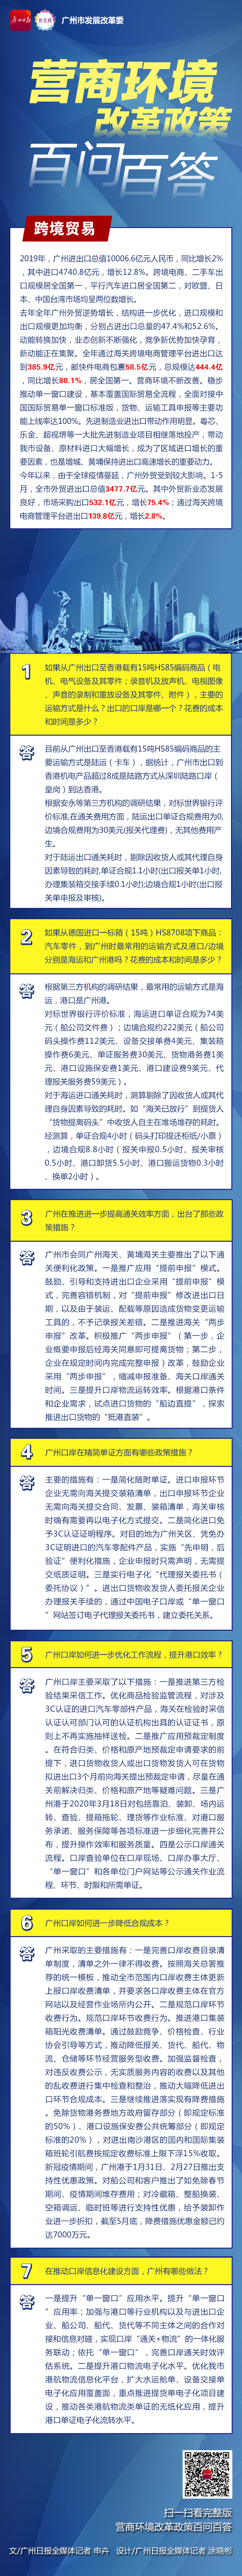 广州营商一图读懂-7跨境贸易-广州日报.jpg